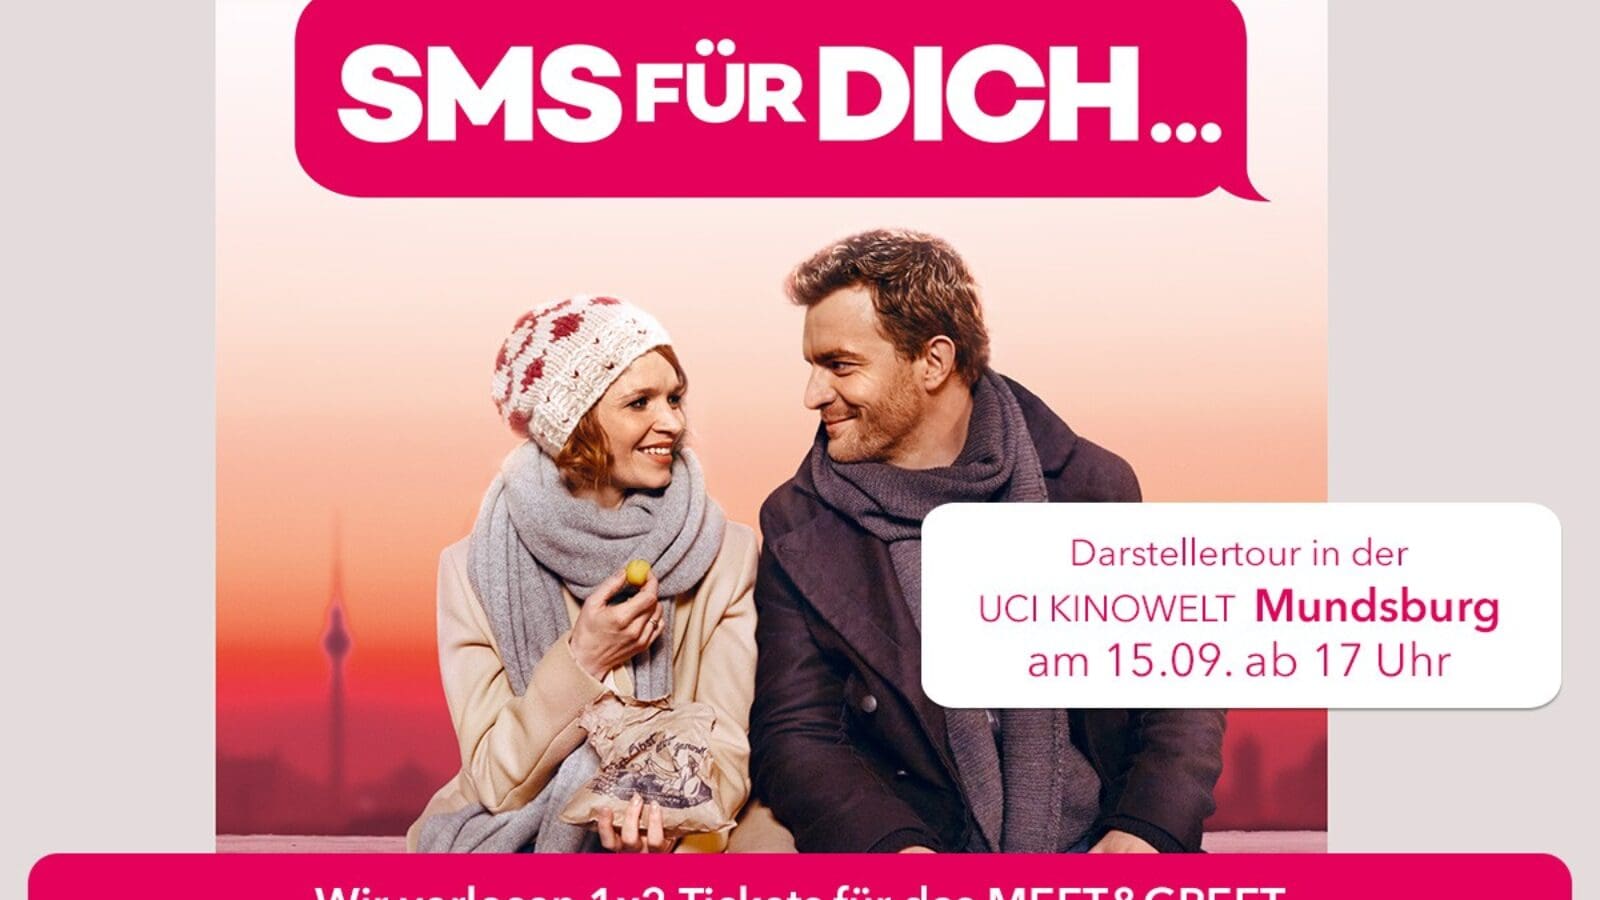 OXMOX verlost Tickets für “SMS Für Dich”!